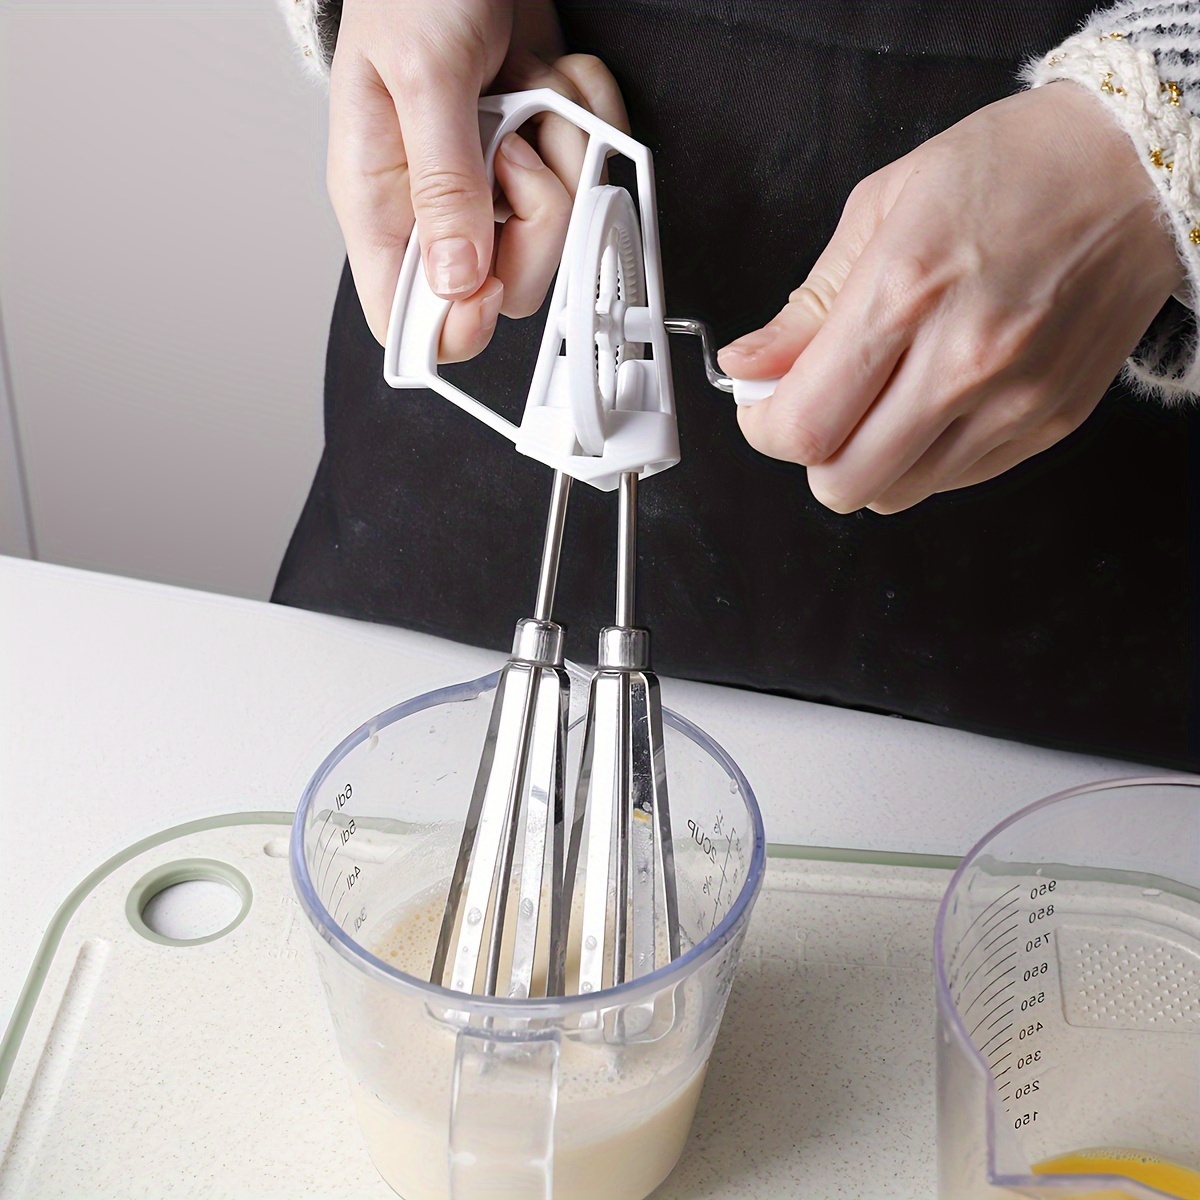 Stainless Steel Portable Spring Egg Stirrer Beater Baking Pastry